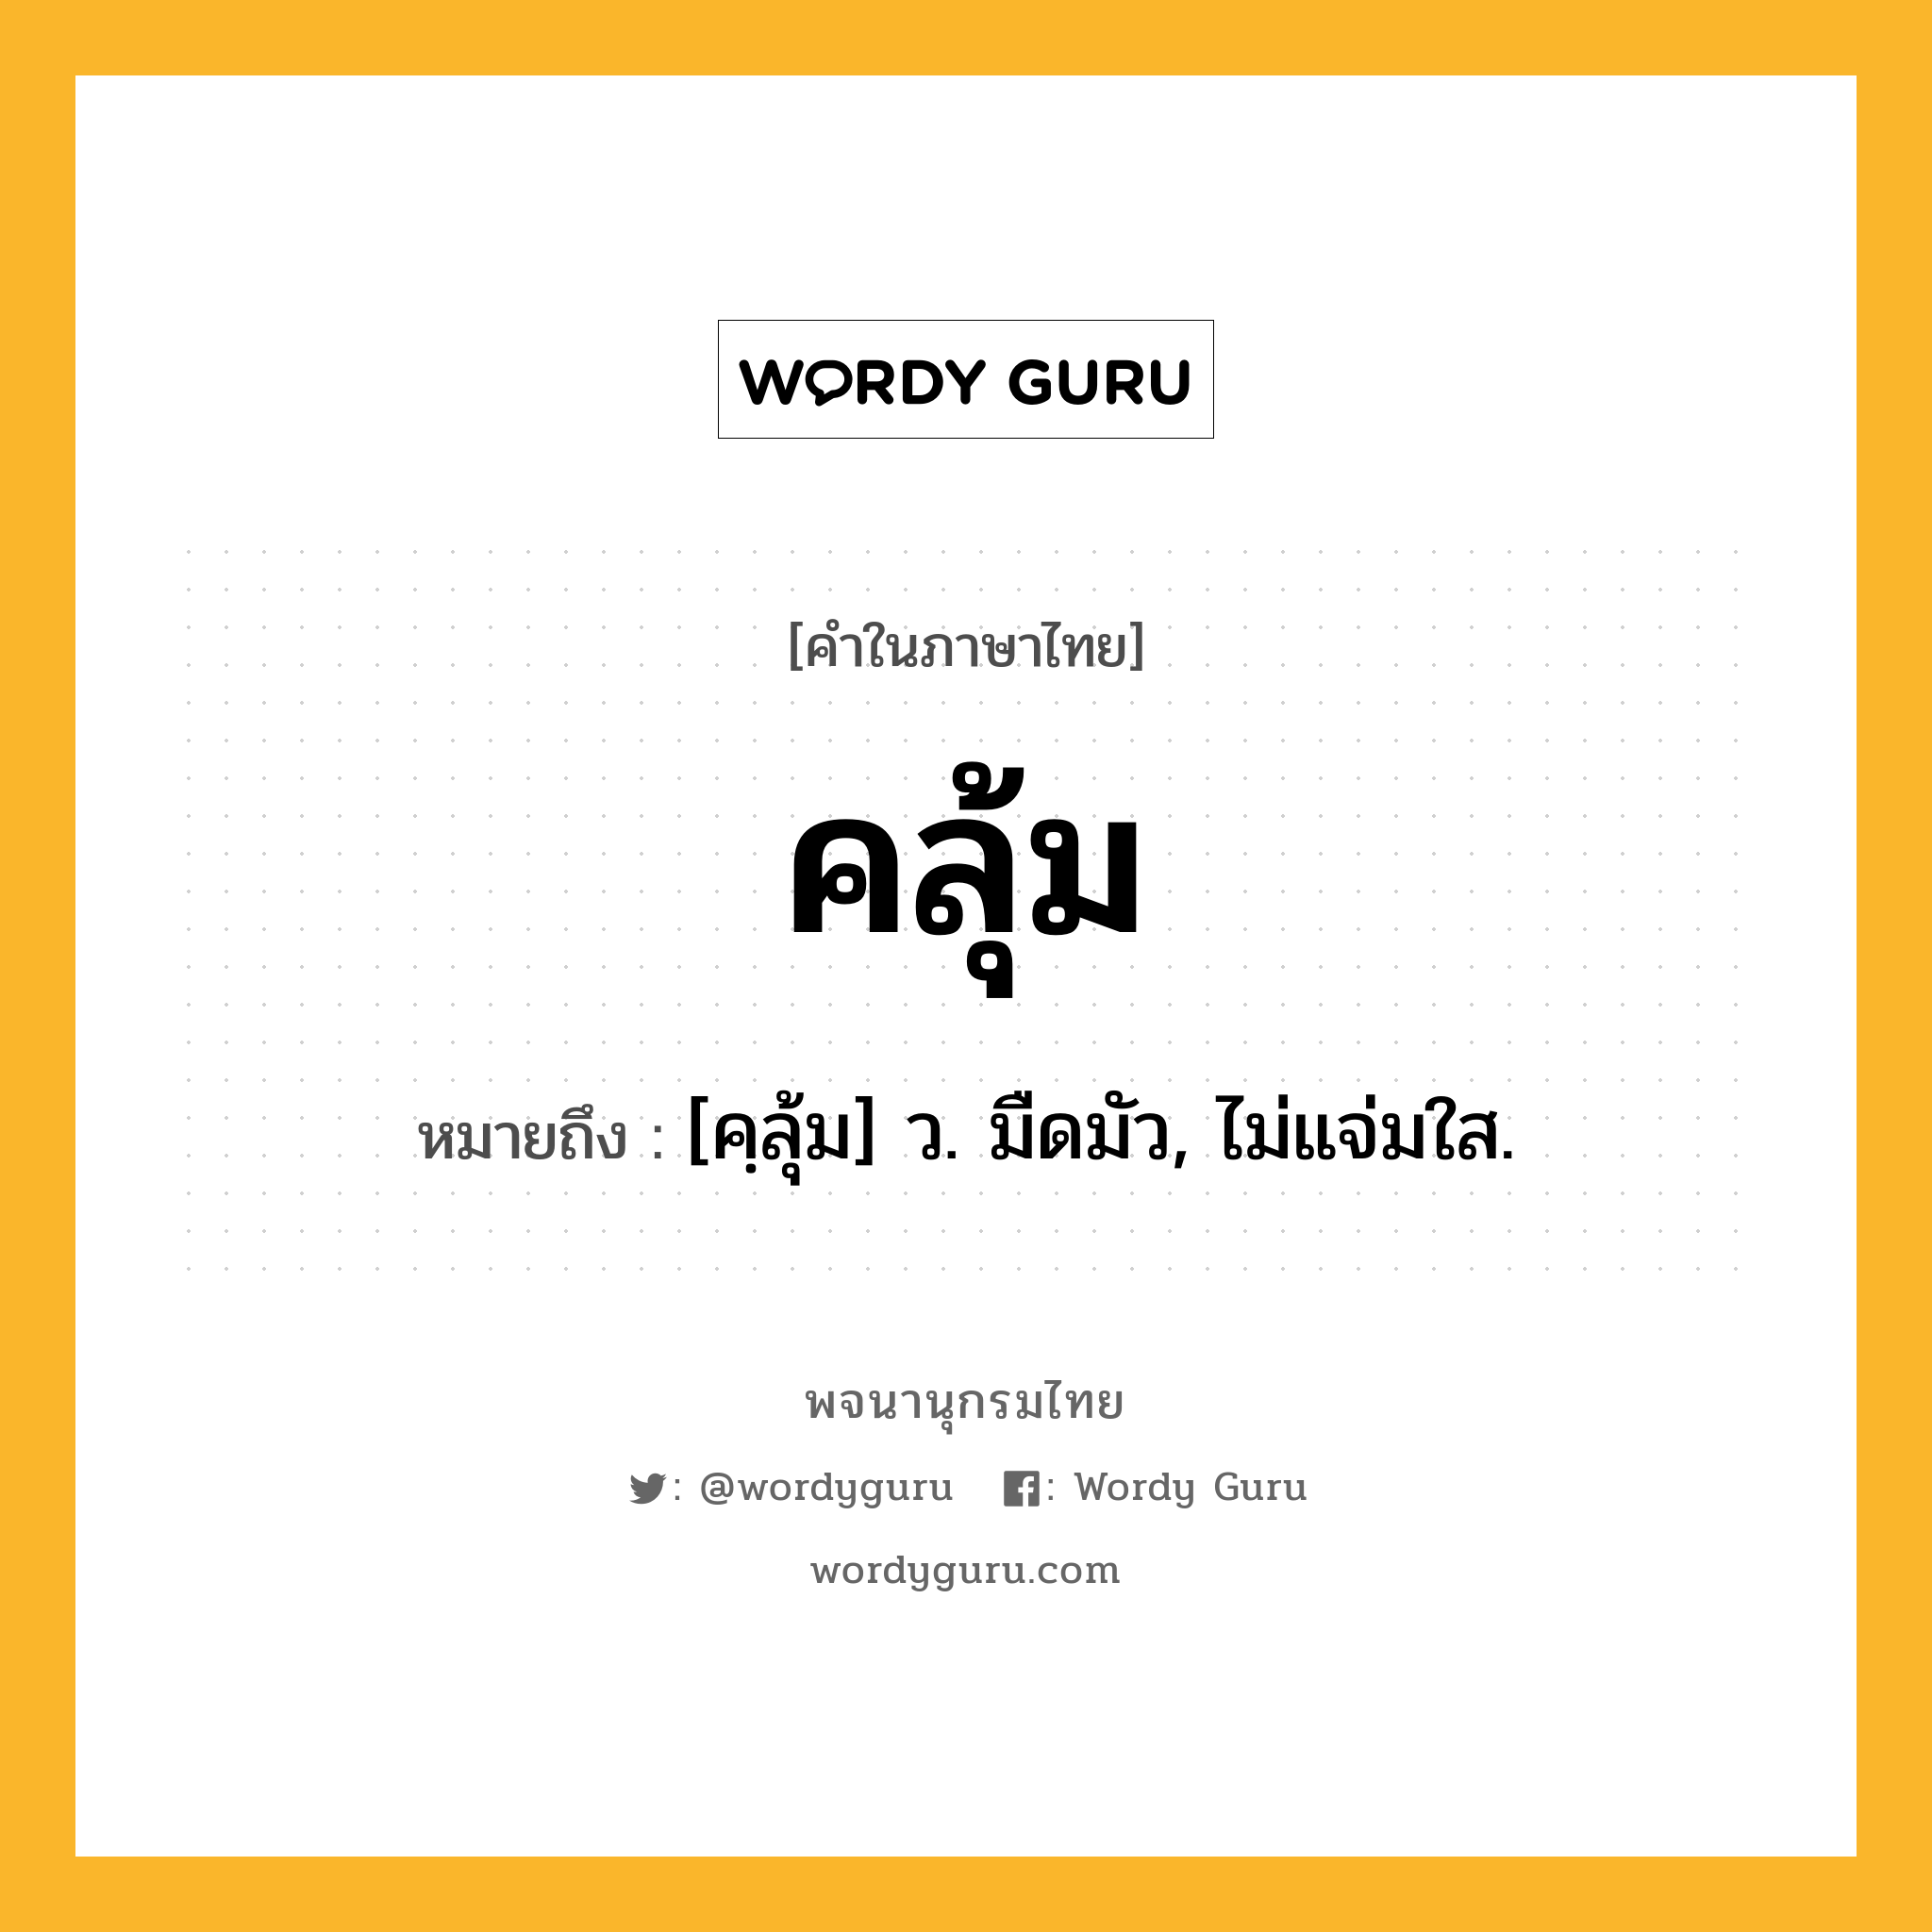 คลุ้ม ความหมาย หมายถึงอะไร?, คำในภาษาไทย คลุ้ม หมายถึง [คฺลุ้ม] ว. มืดมัว, ไม่แจ่มใส.